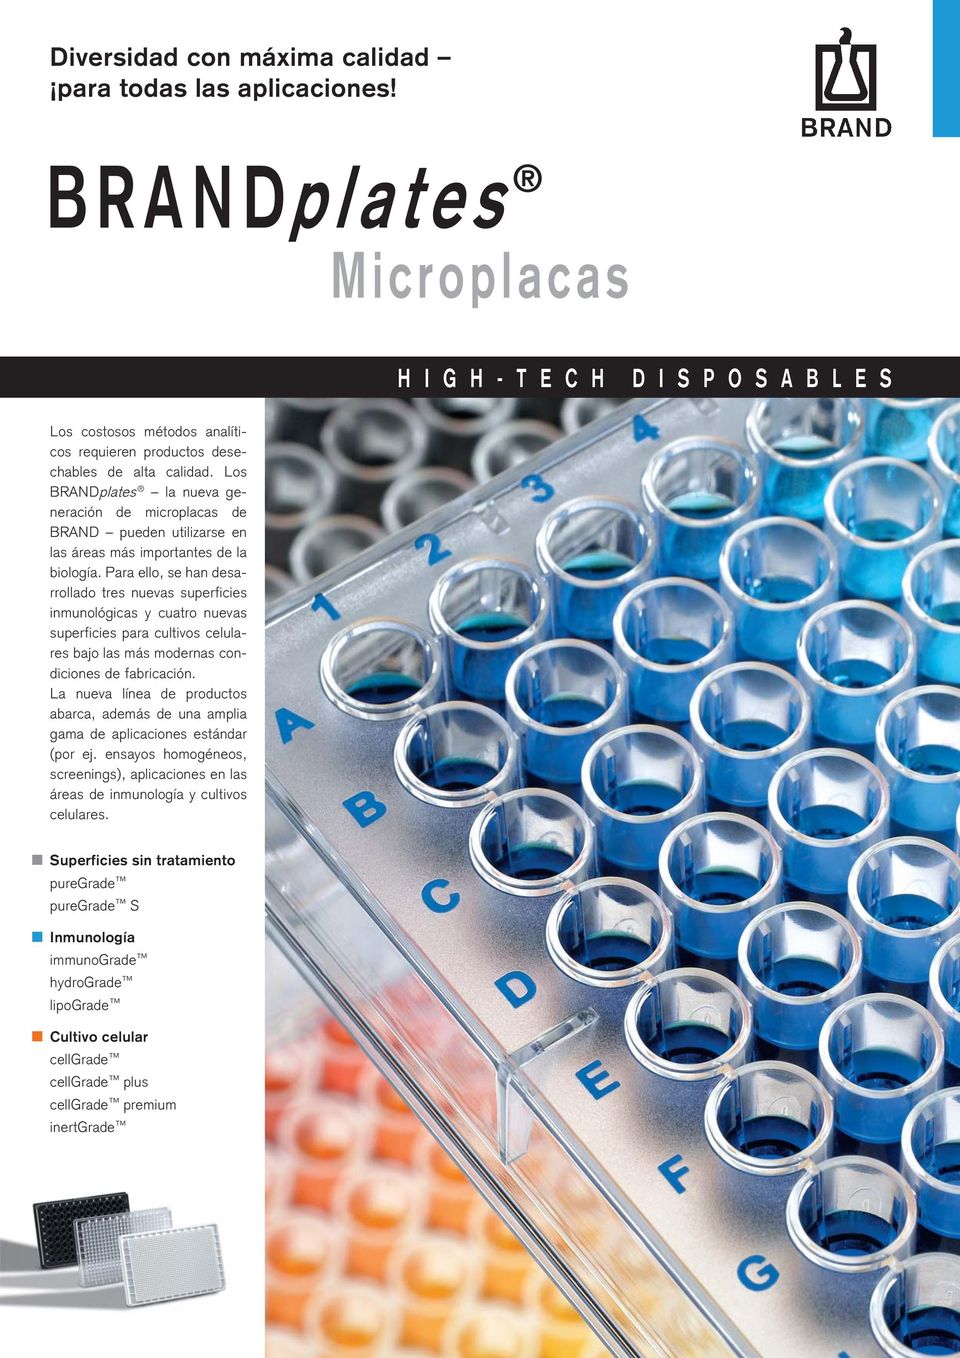 Los BRANDplates la nueva generación de microplacas de BRAND pueden utilizarse en las áreas más importantes de la biología.